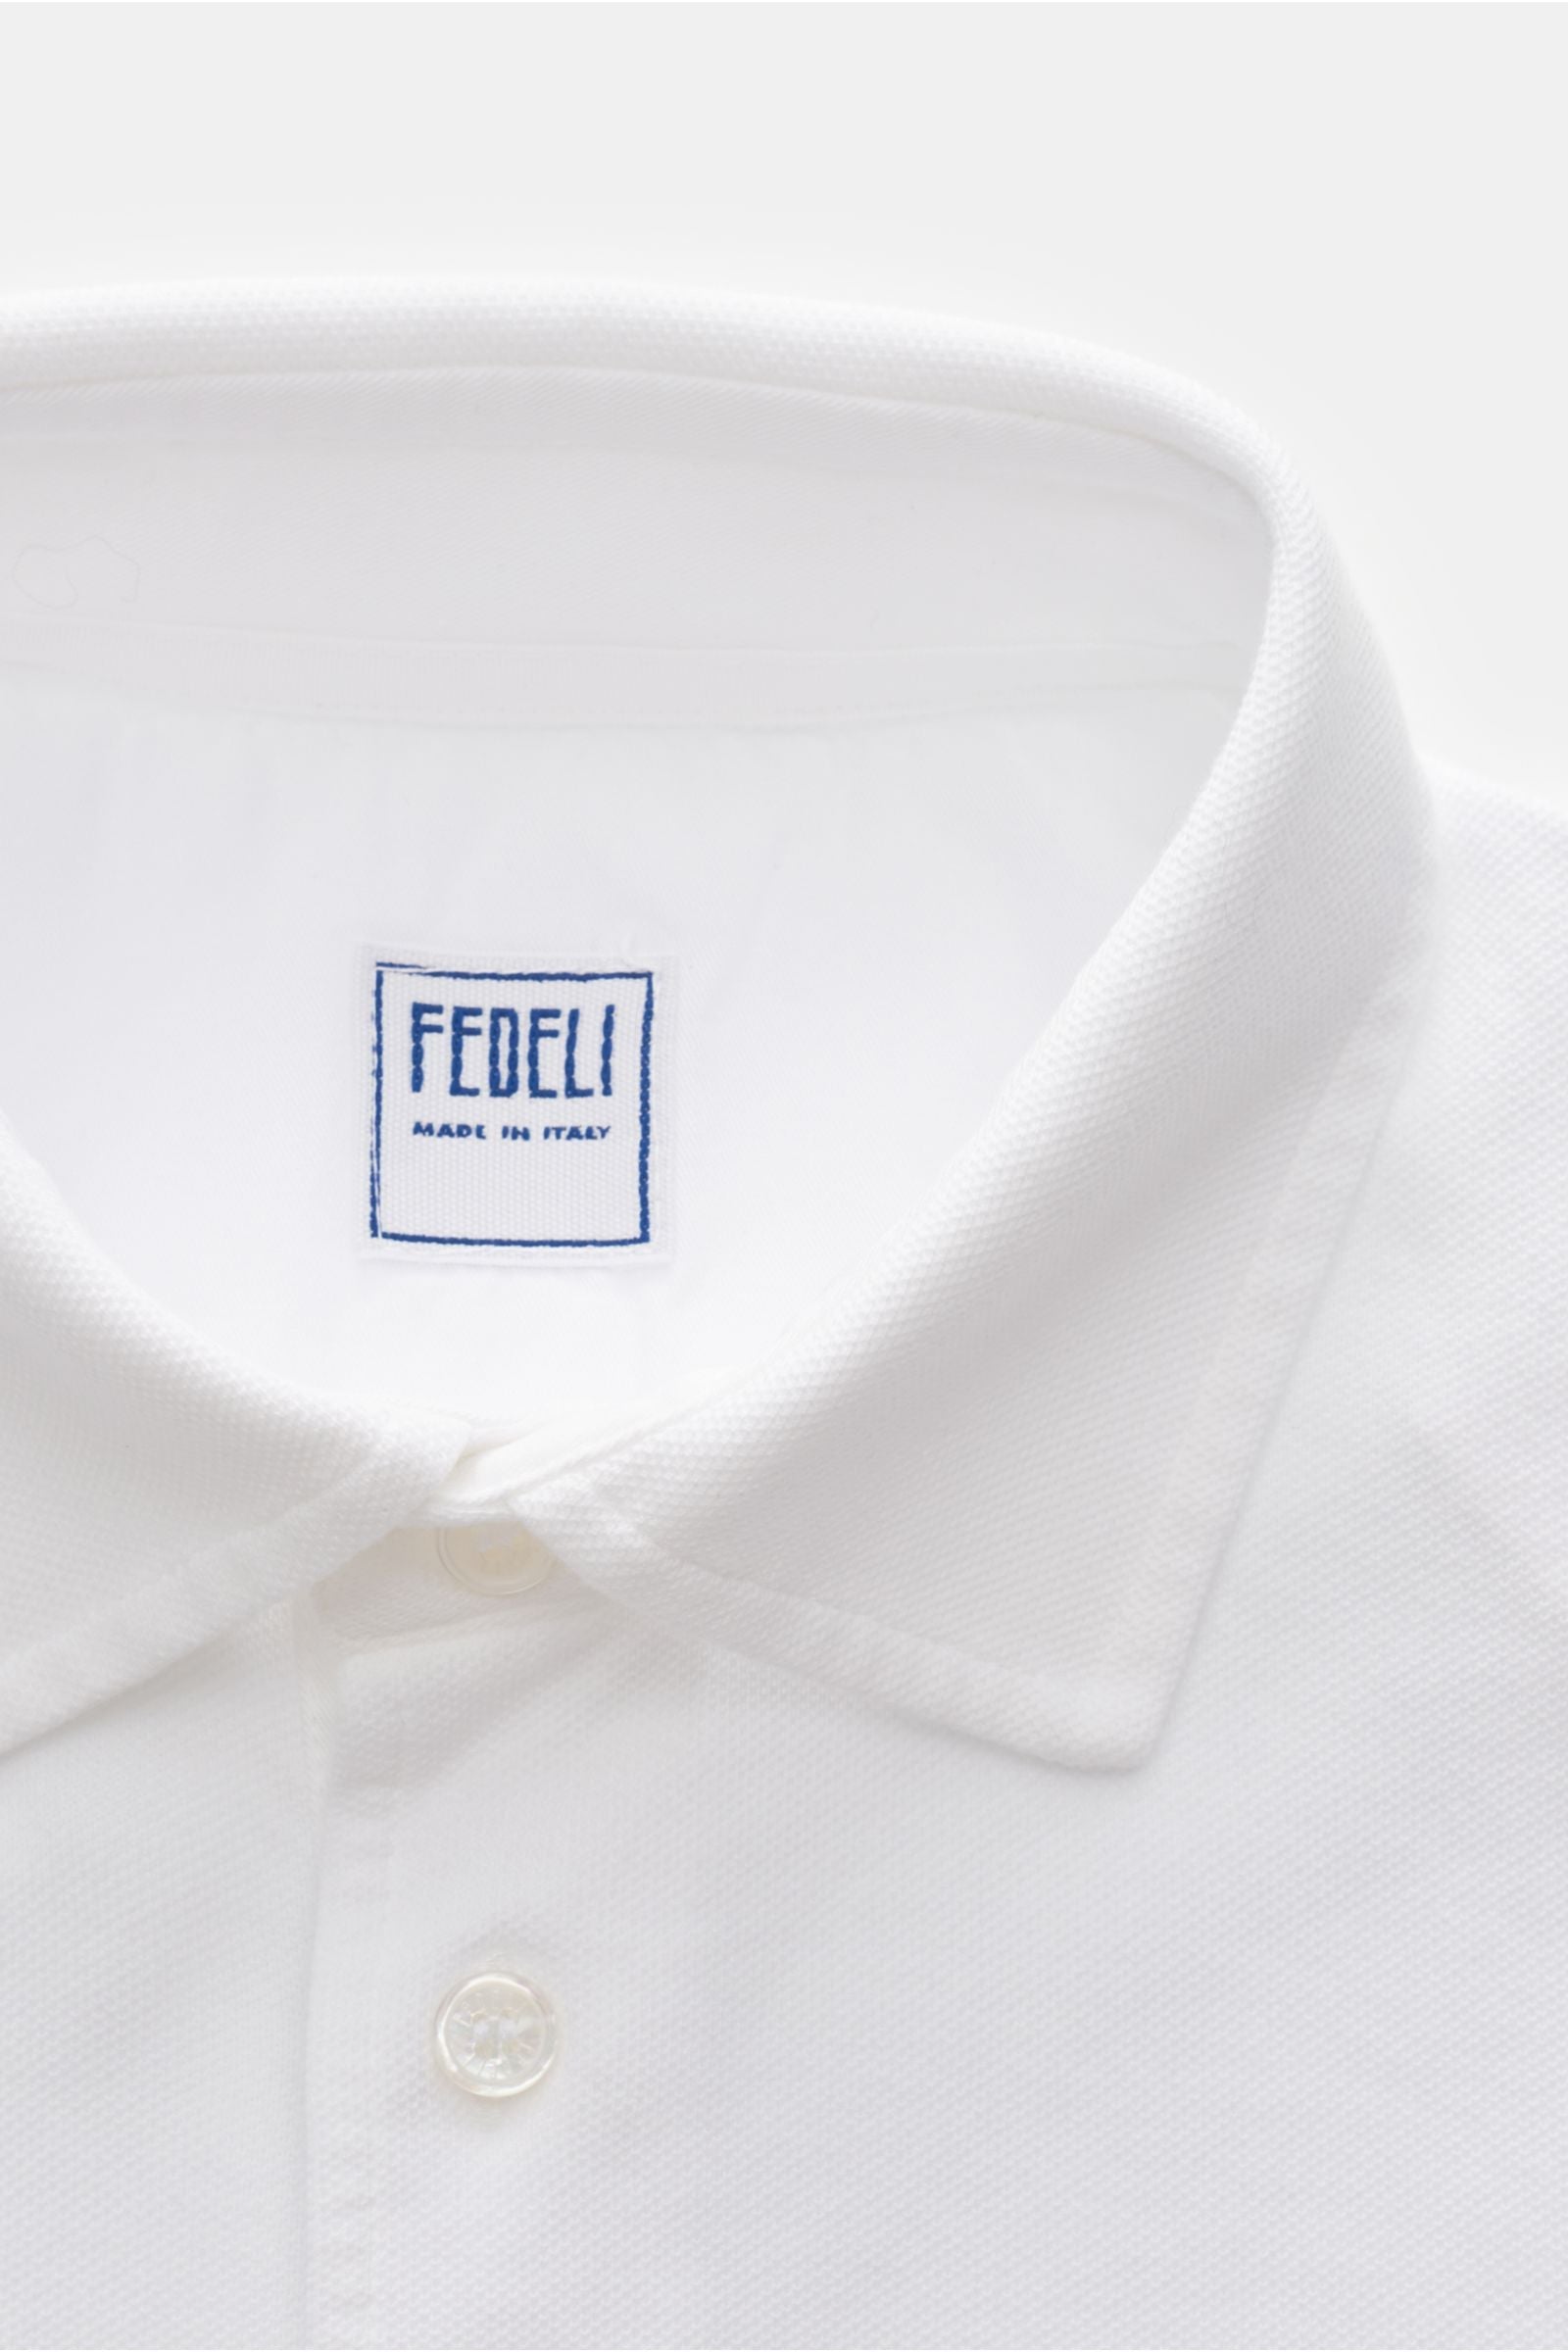 Fedeli Fedeli Polo Shirt - Wit